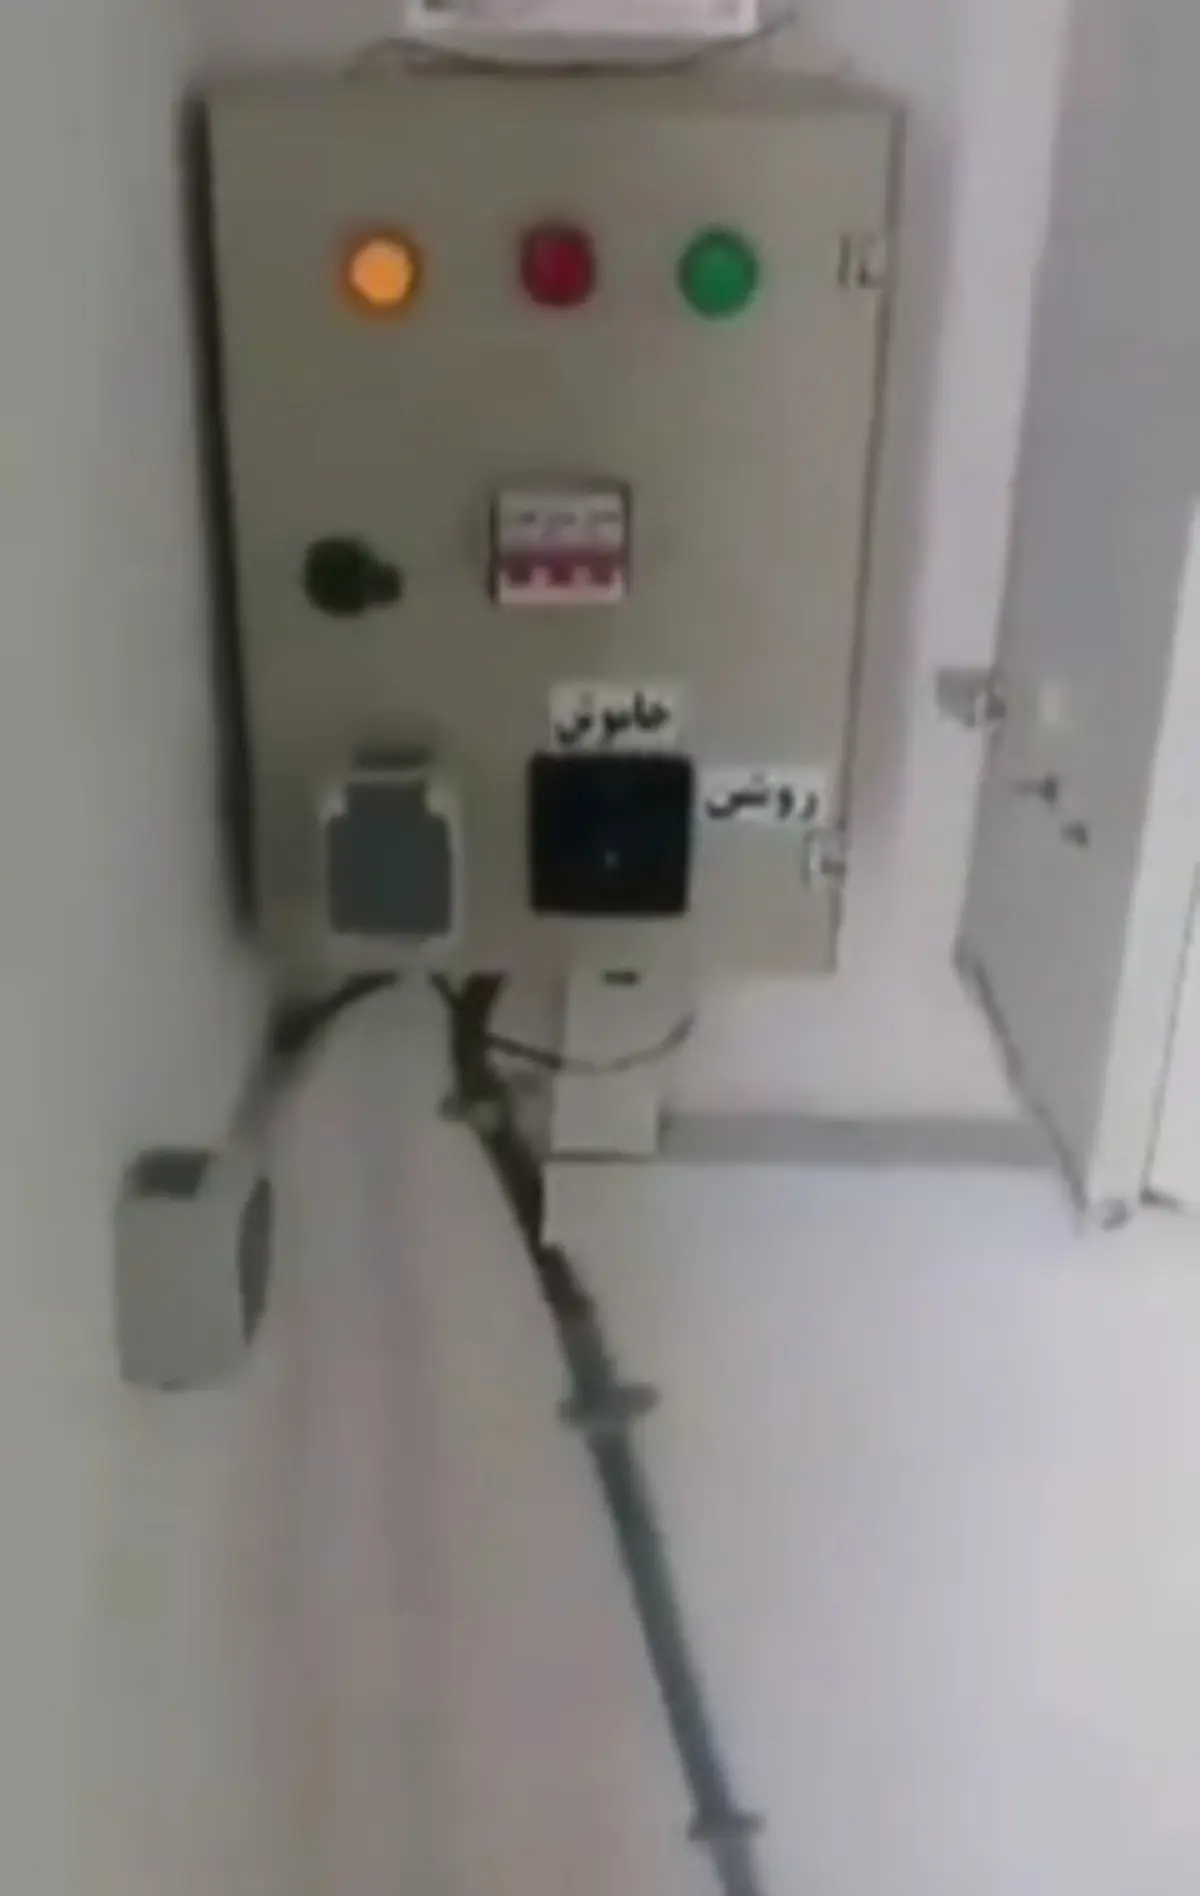 طریقه خروج نفرات از آسانسور در زمان قطع شدن برق + ویدئو